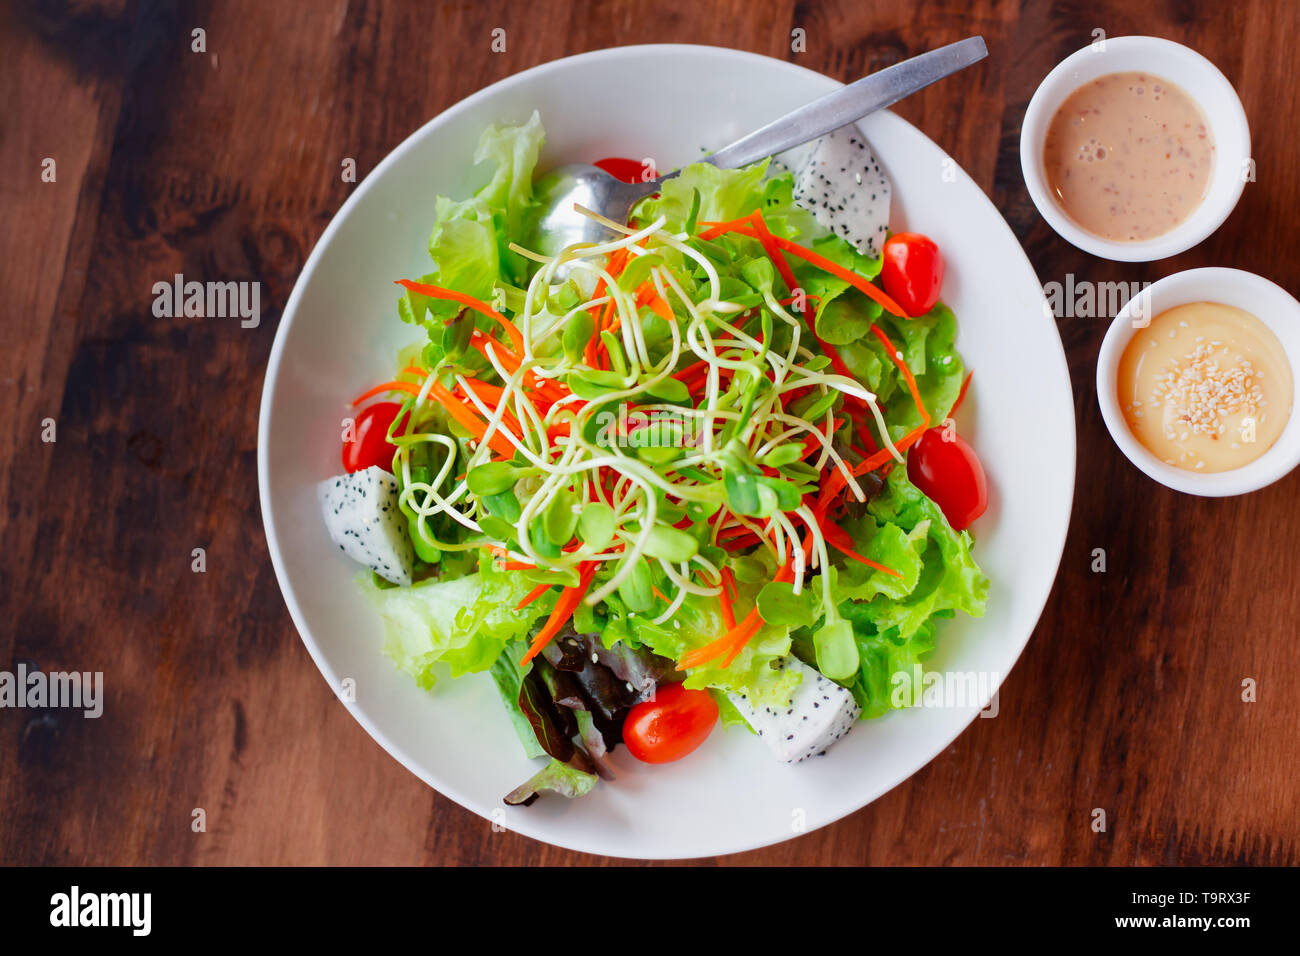 Vegetali mix di frutta insalata con salsa ,pulito e il cibo sano per vegetariani a basso contenuto di grassi in fibra ad alta vista dall'alto sul tavolo di legno Foto Stock